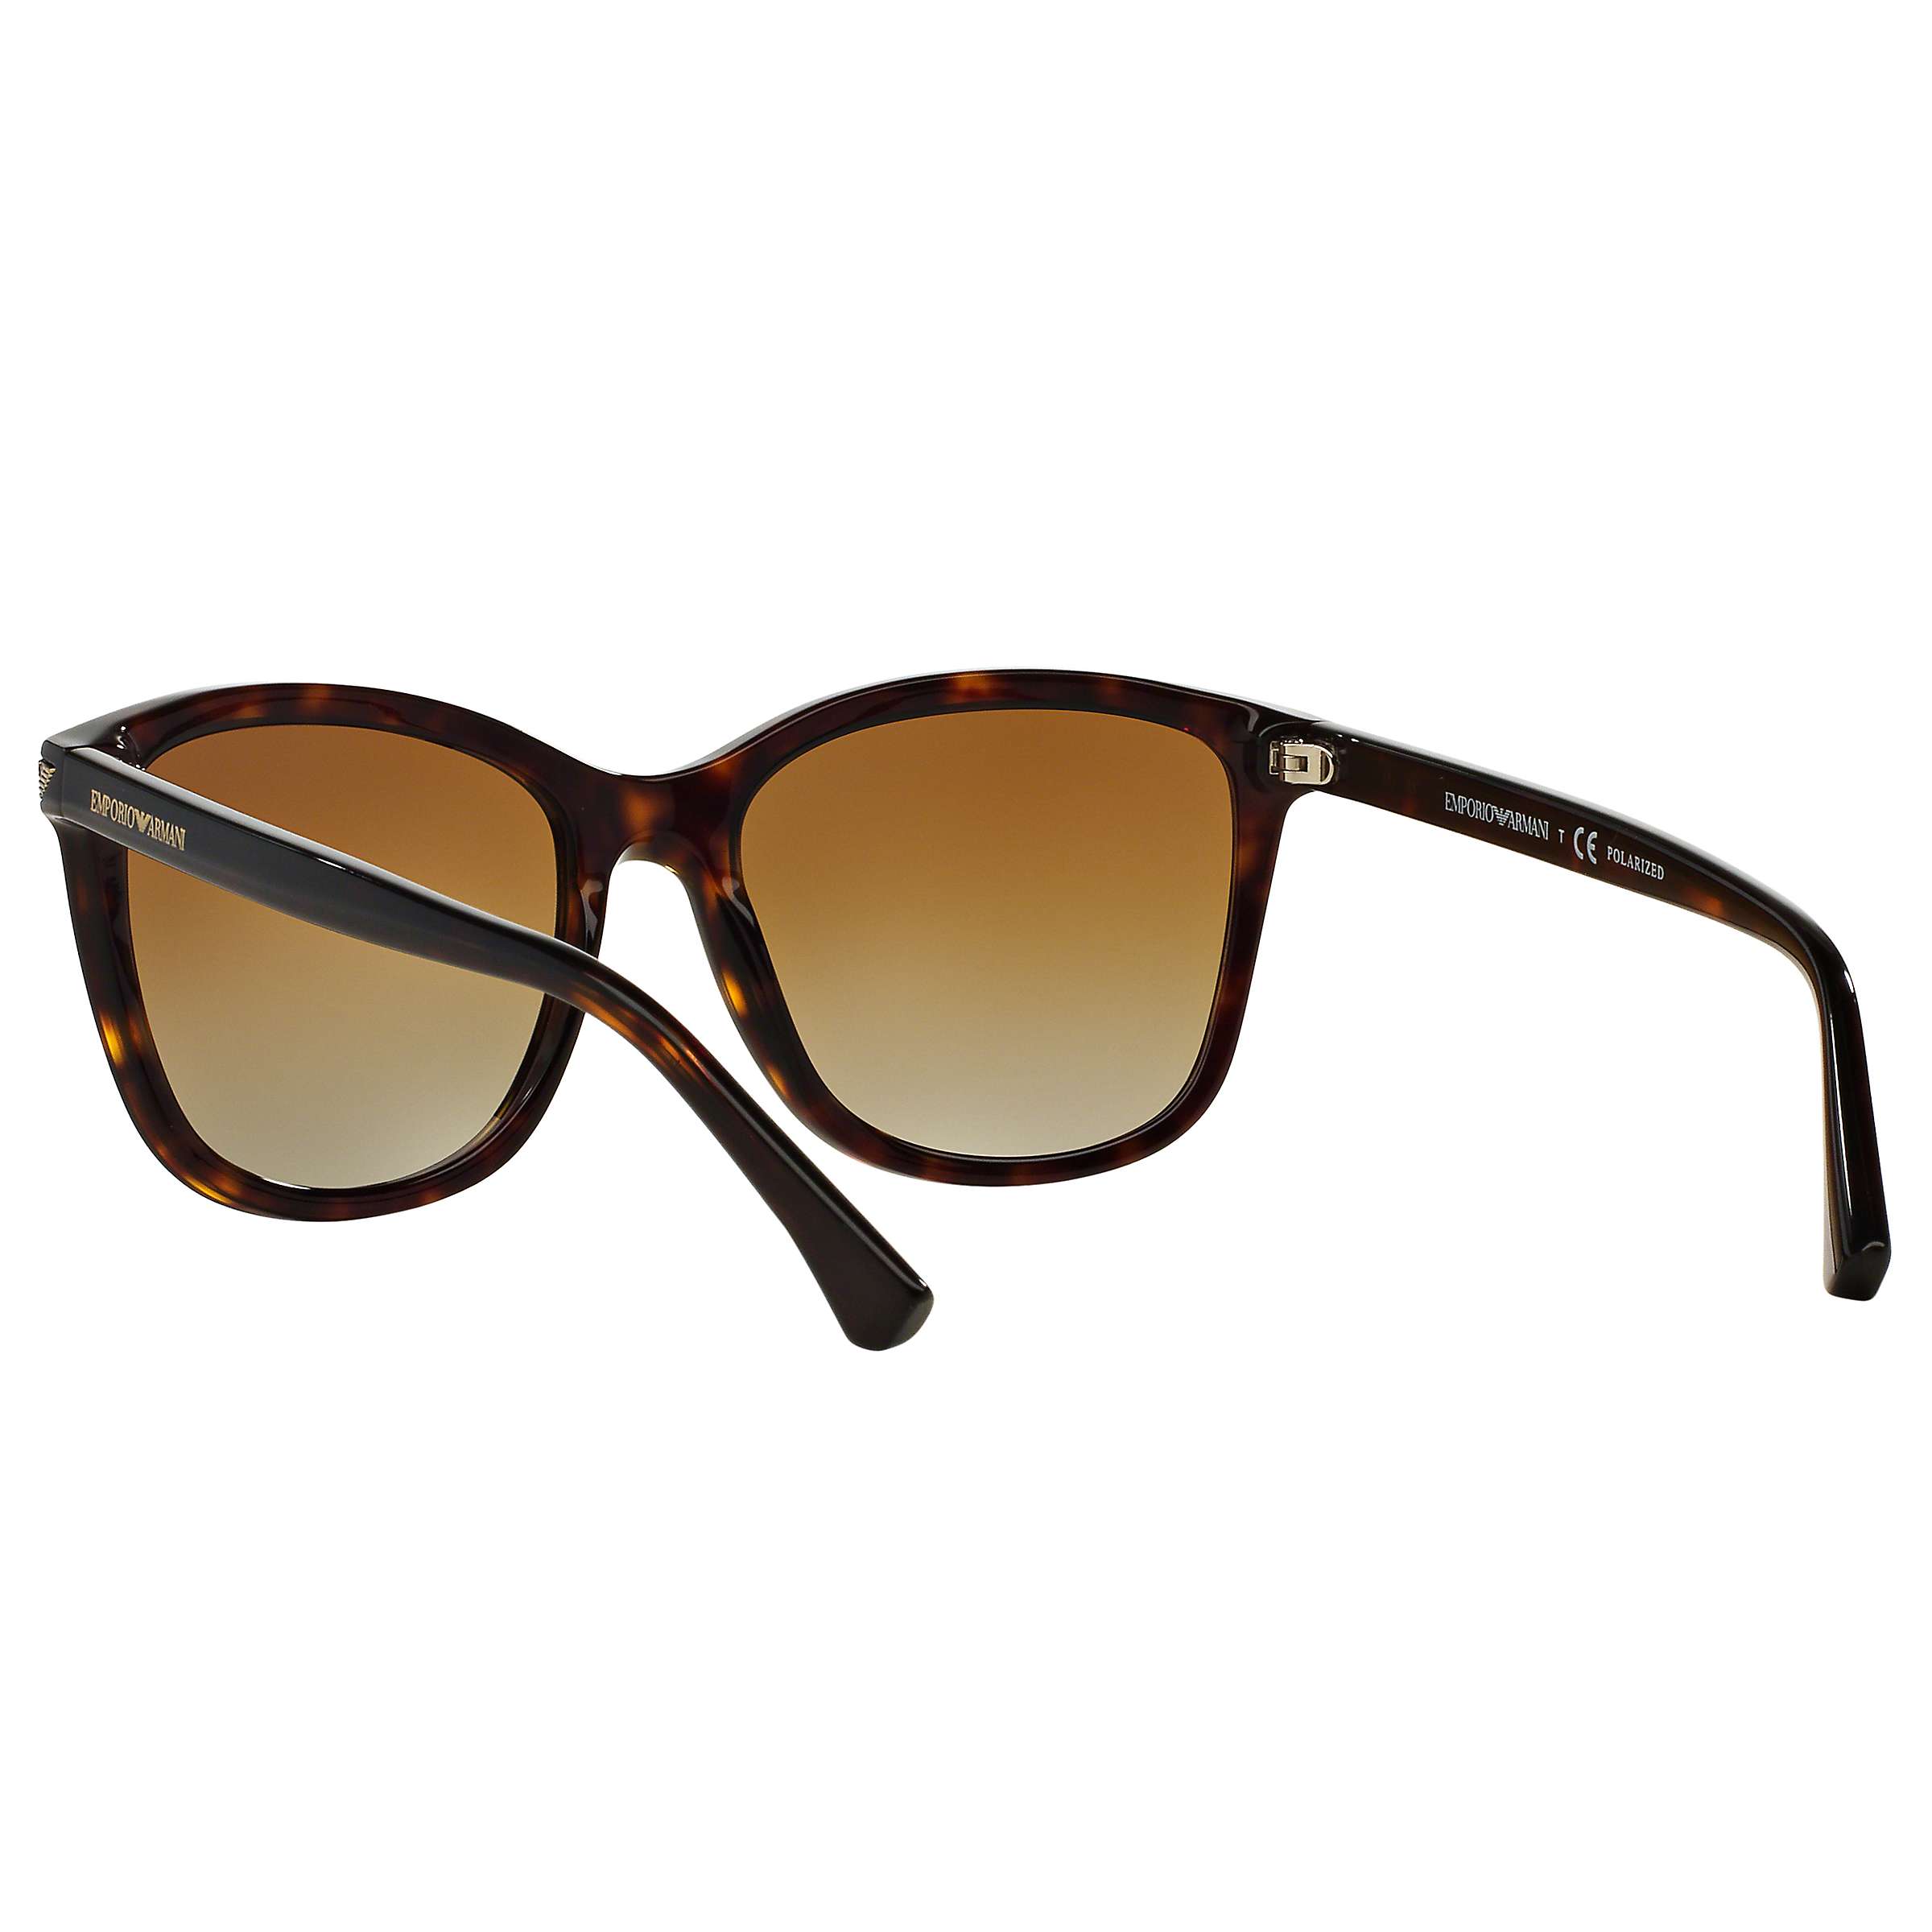 Buy Emporio Armani EA4060 Women's Polarised Square Sunglasses, Tortoise Online at johnlewis.com